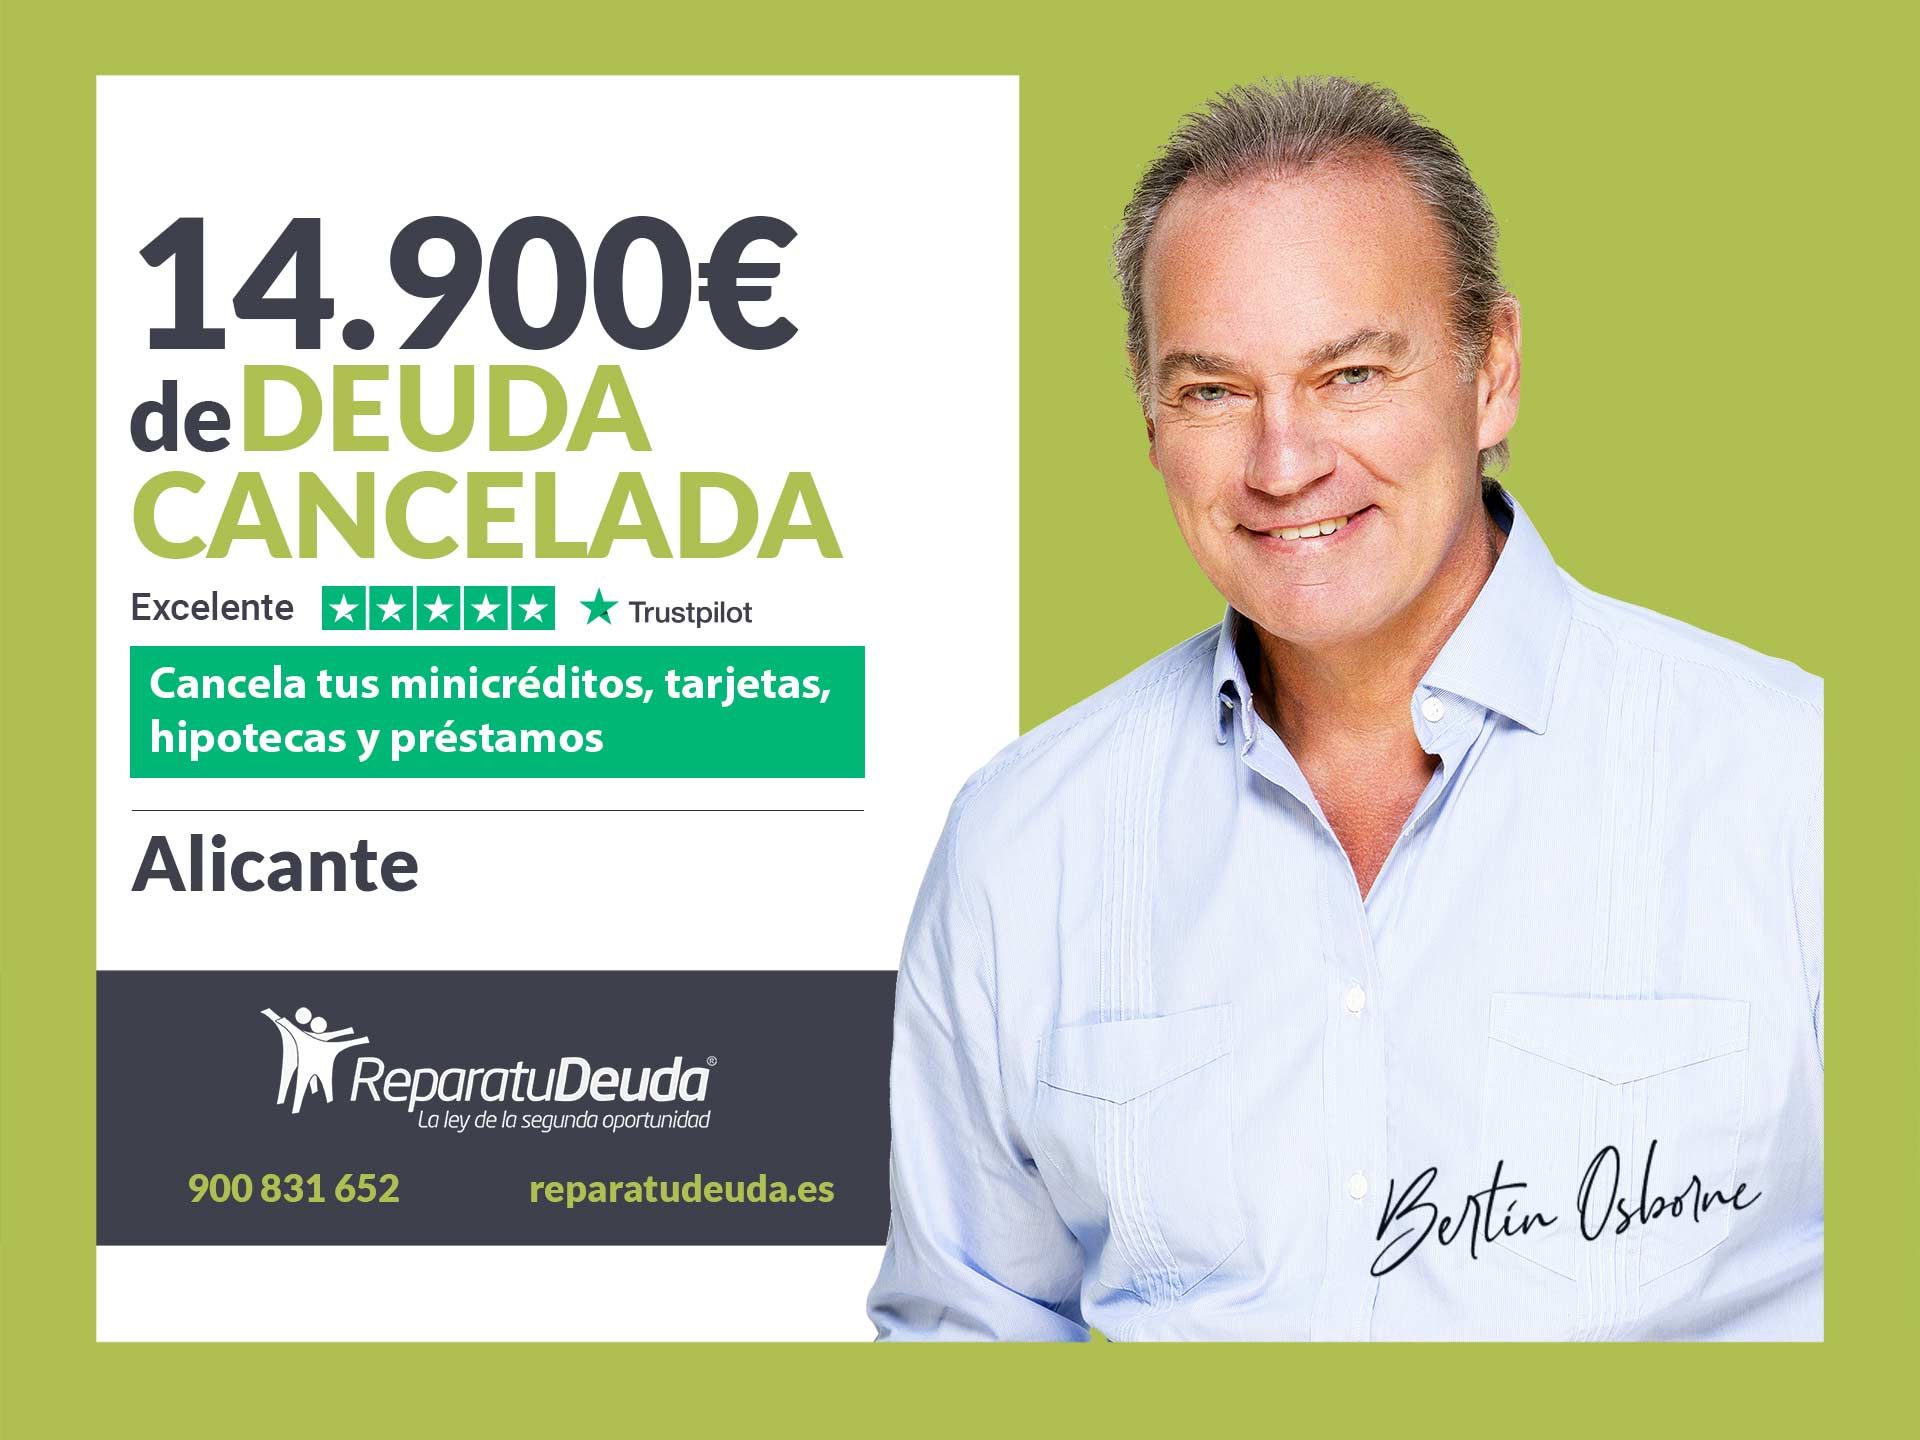 Repara tu Deuda cancela 14.900? en Alicante (Comunidad Valenciana) con la Ley de Segunda Oportunidad